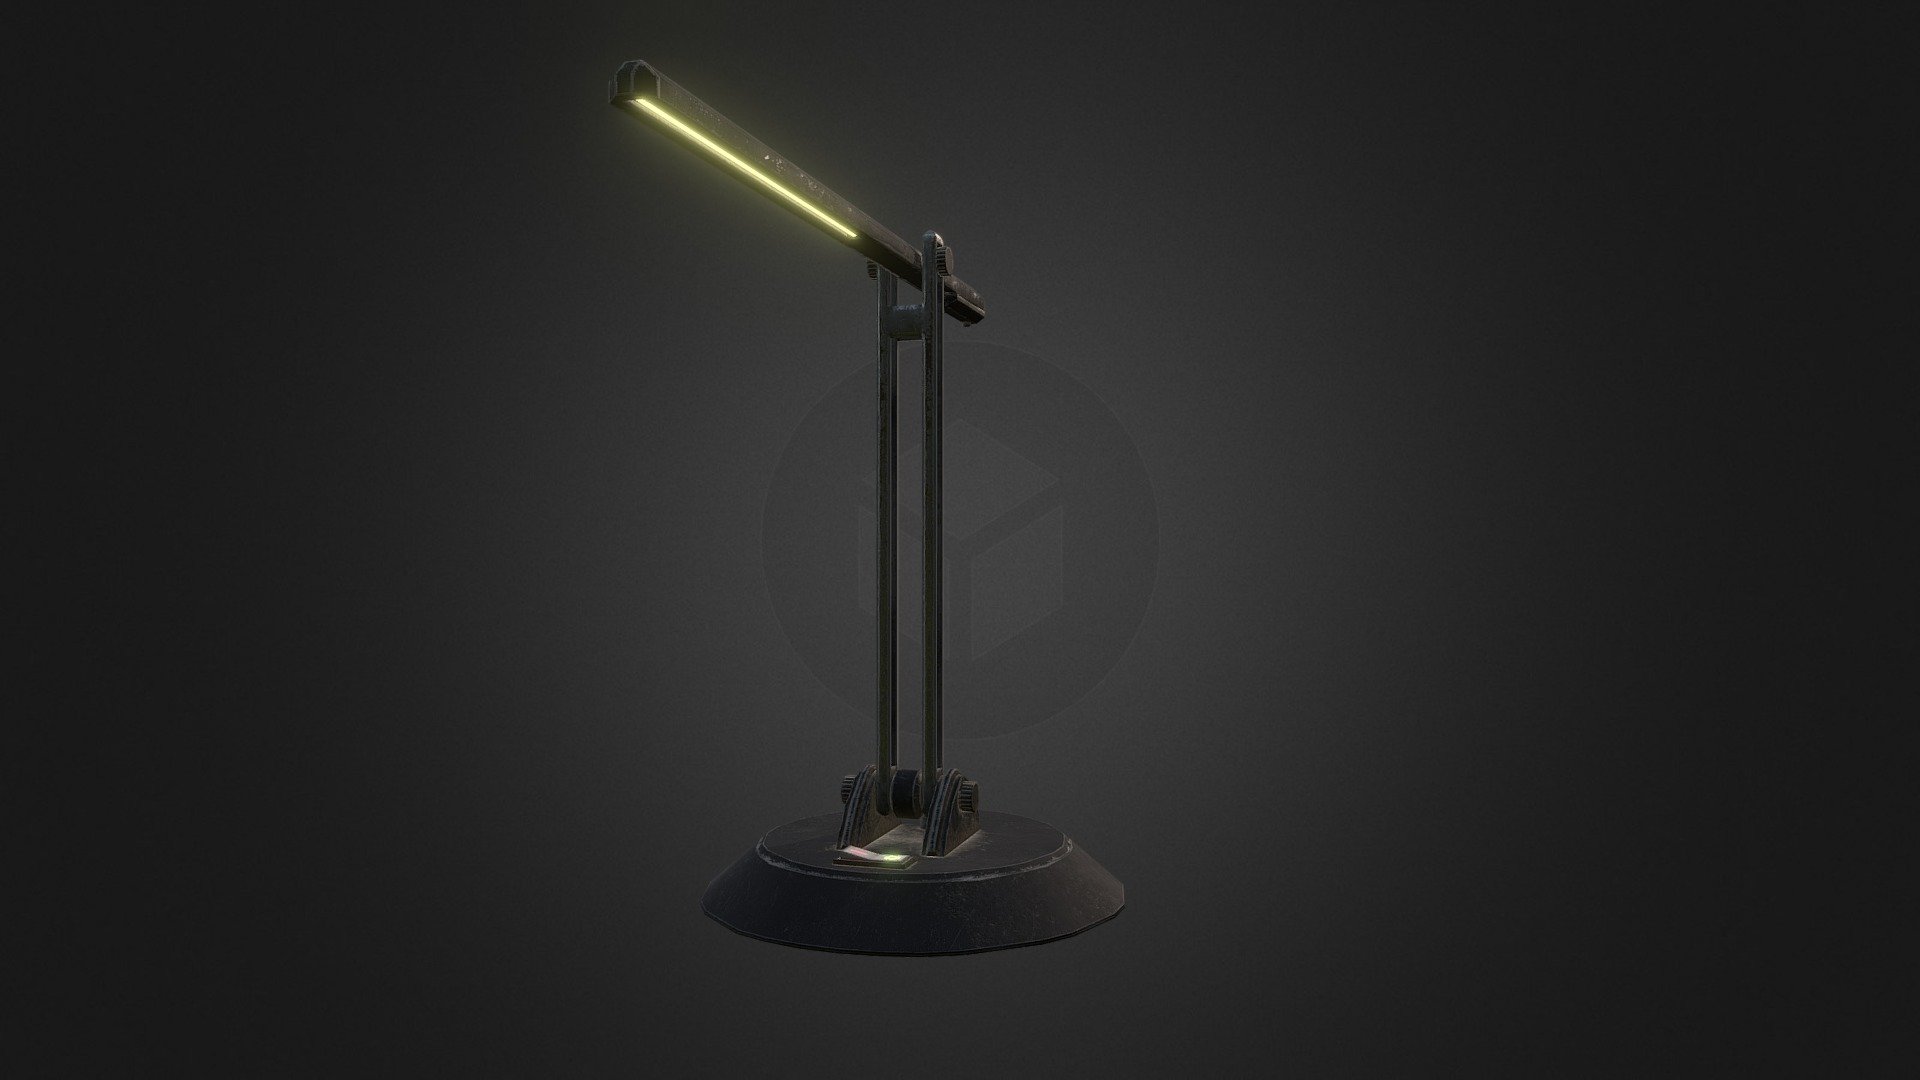 Lamp for the desk scene - Lamp - 3D model by frazermac 3d model